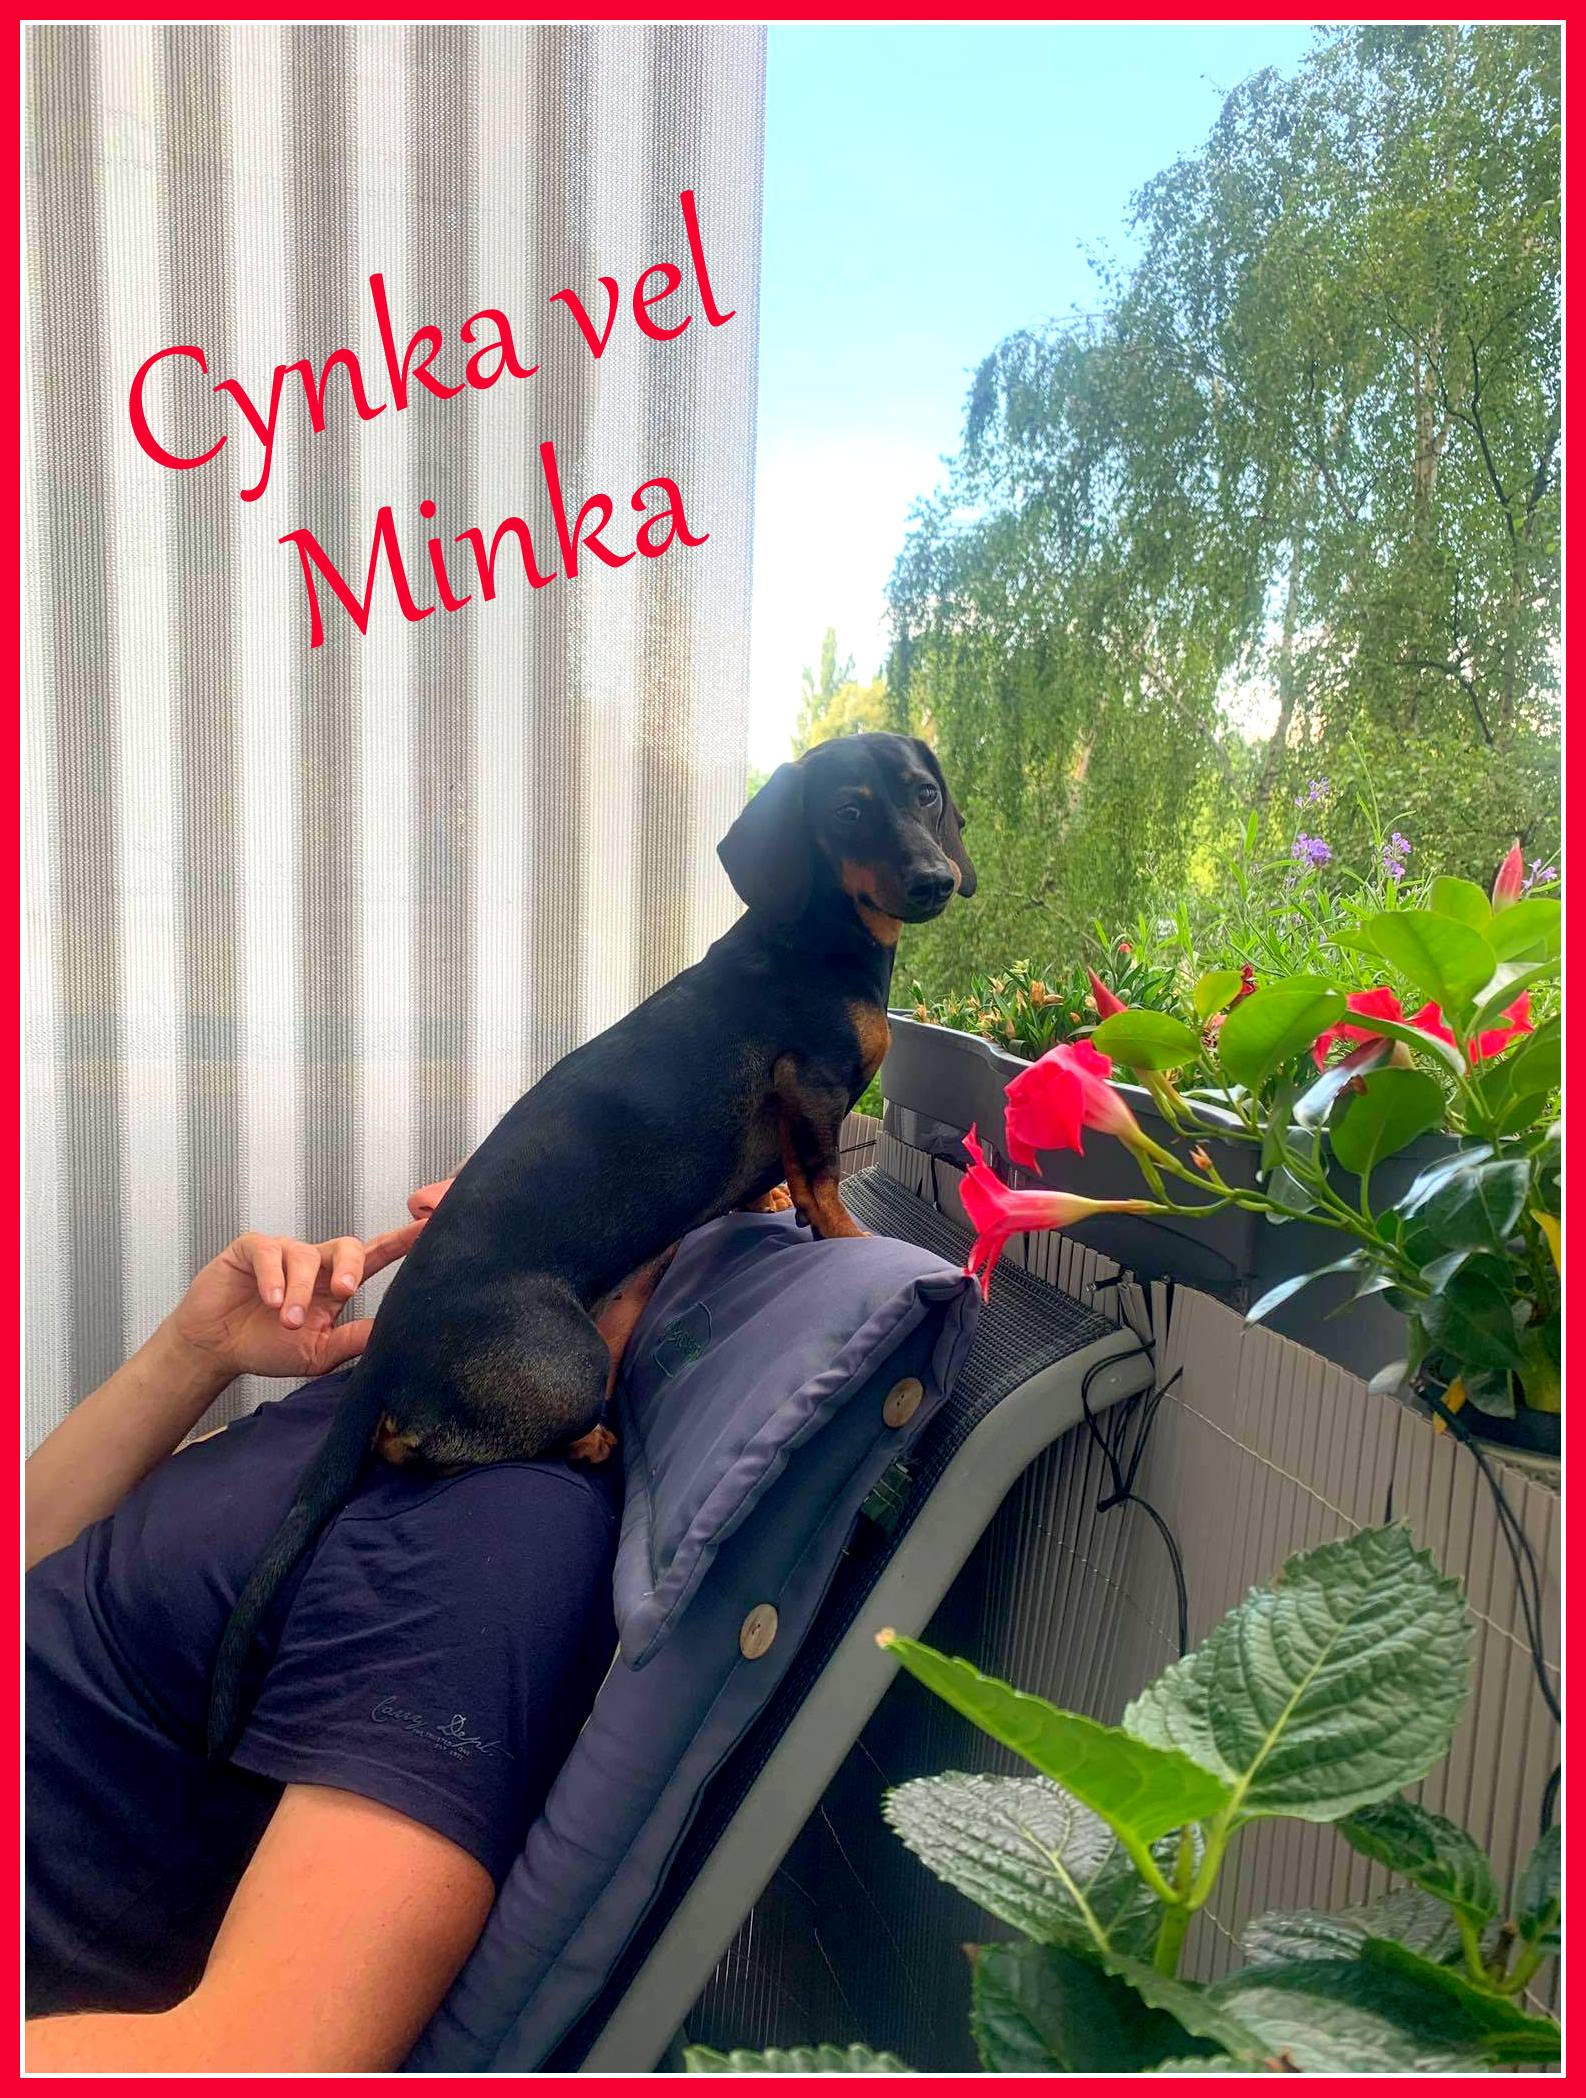 Cynka Minka